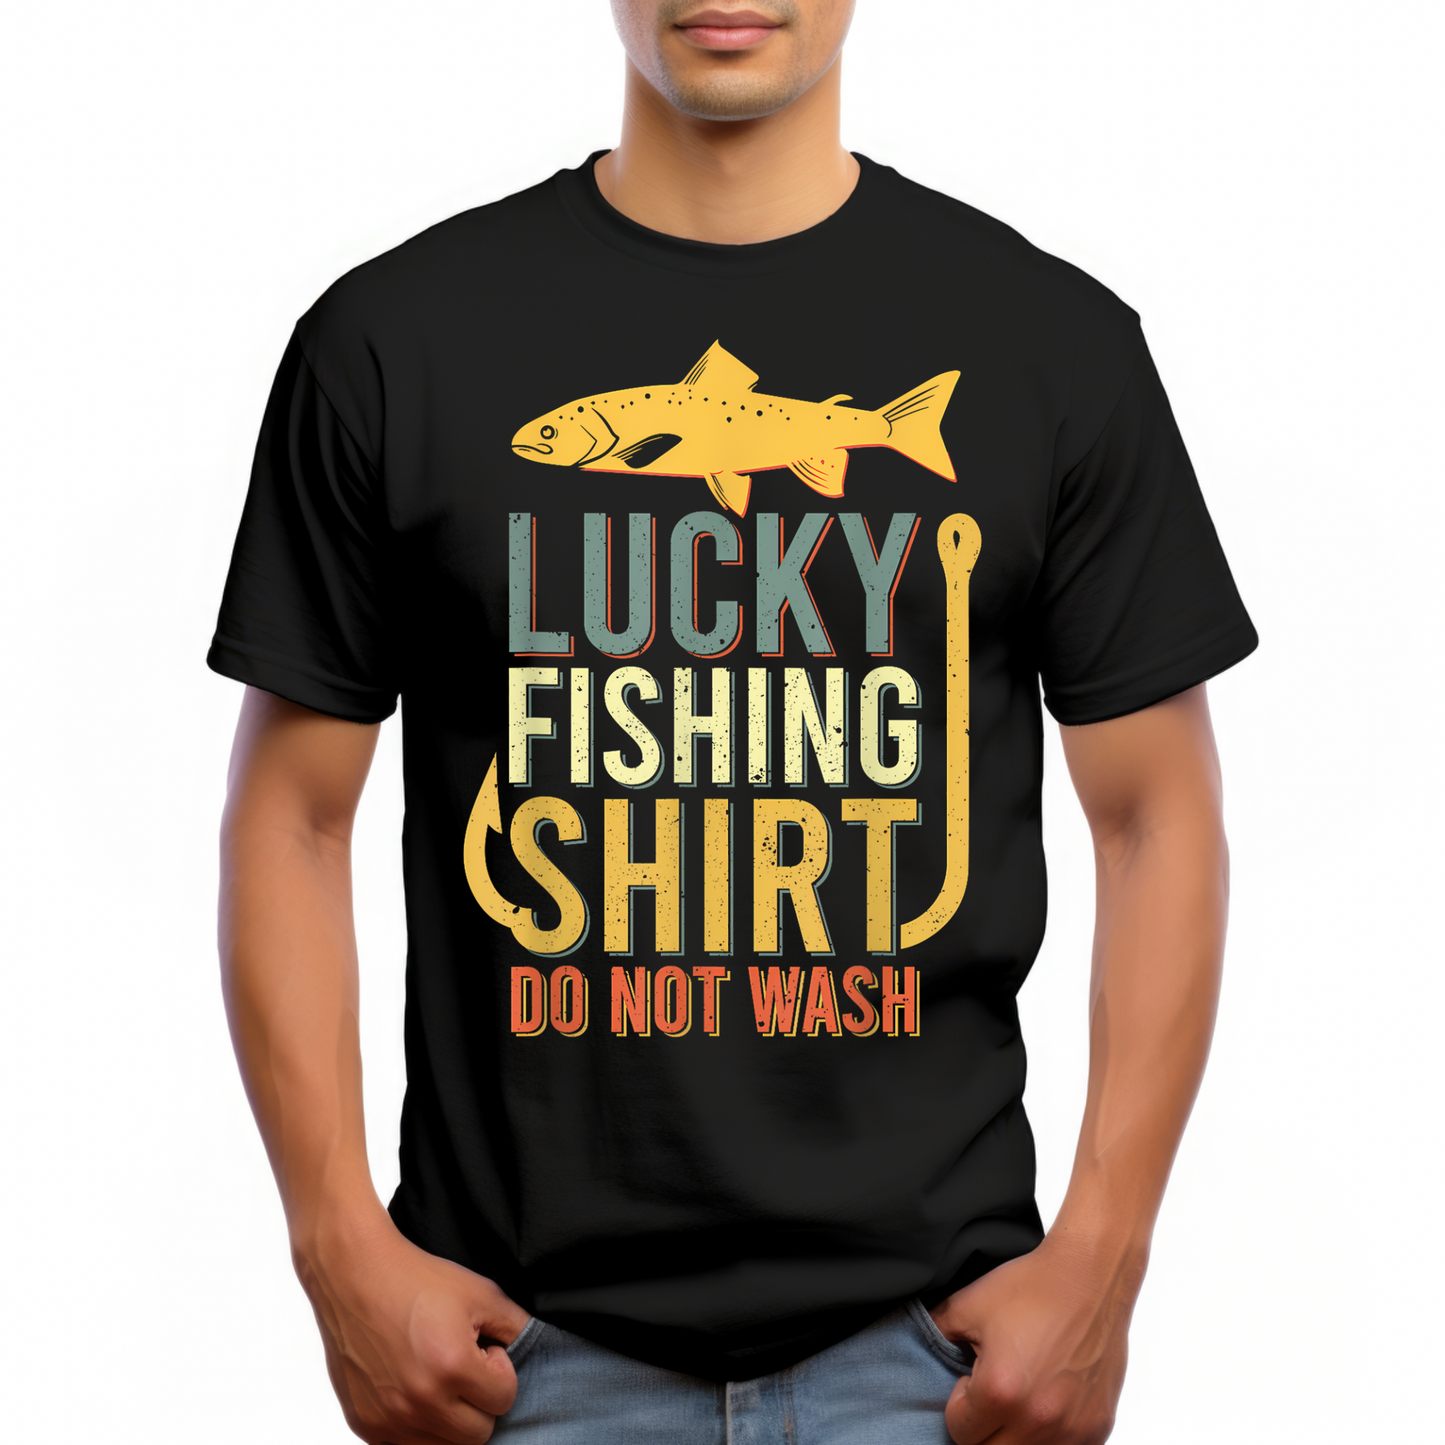 Lucky fishing shirt